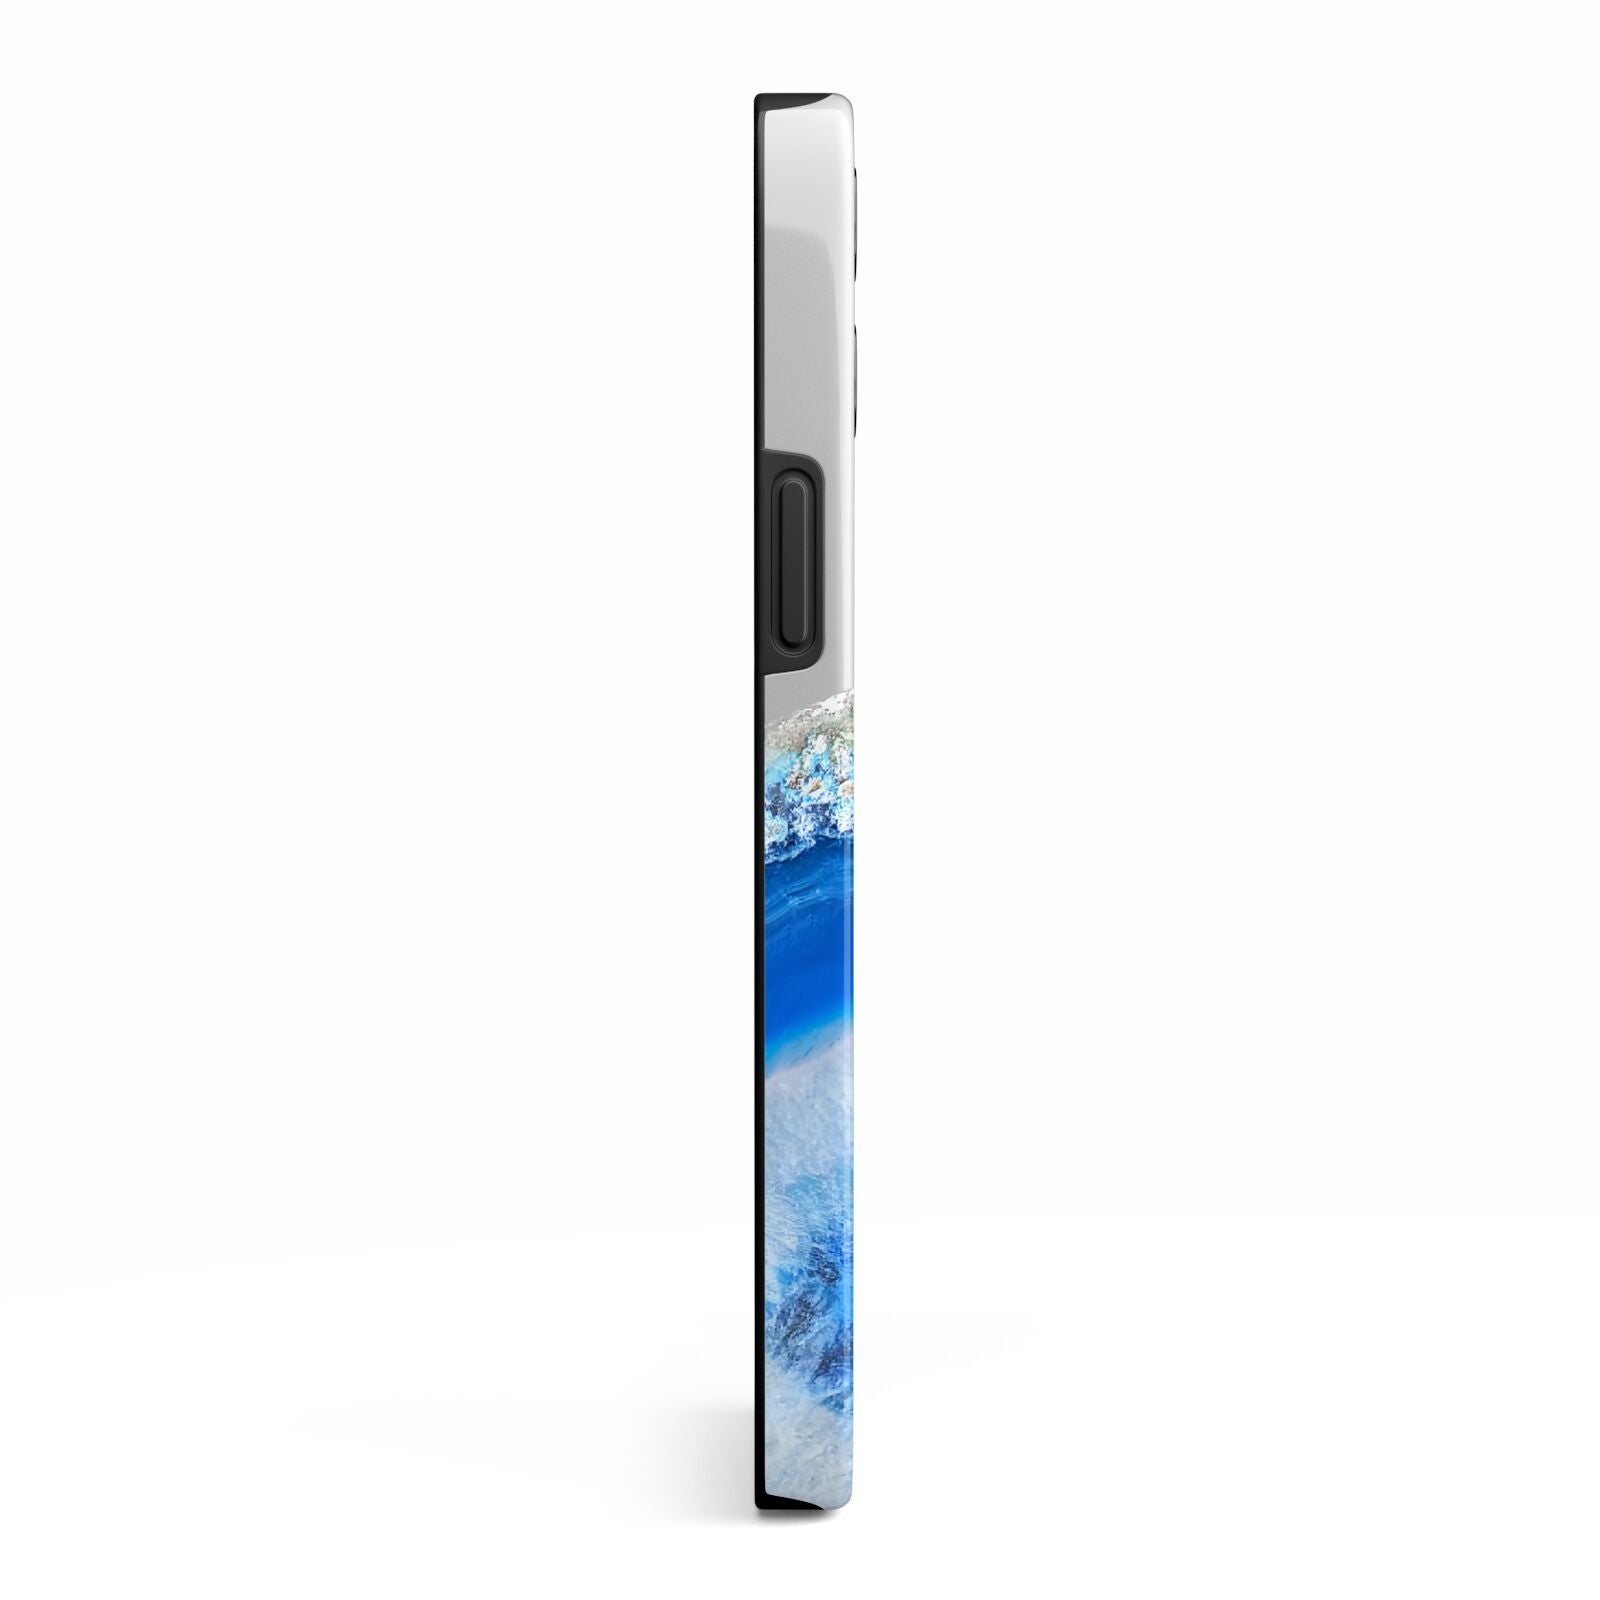 Agate Blue iPhone 13 Pro Max Side Image 3D Tough Case